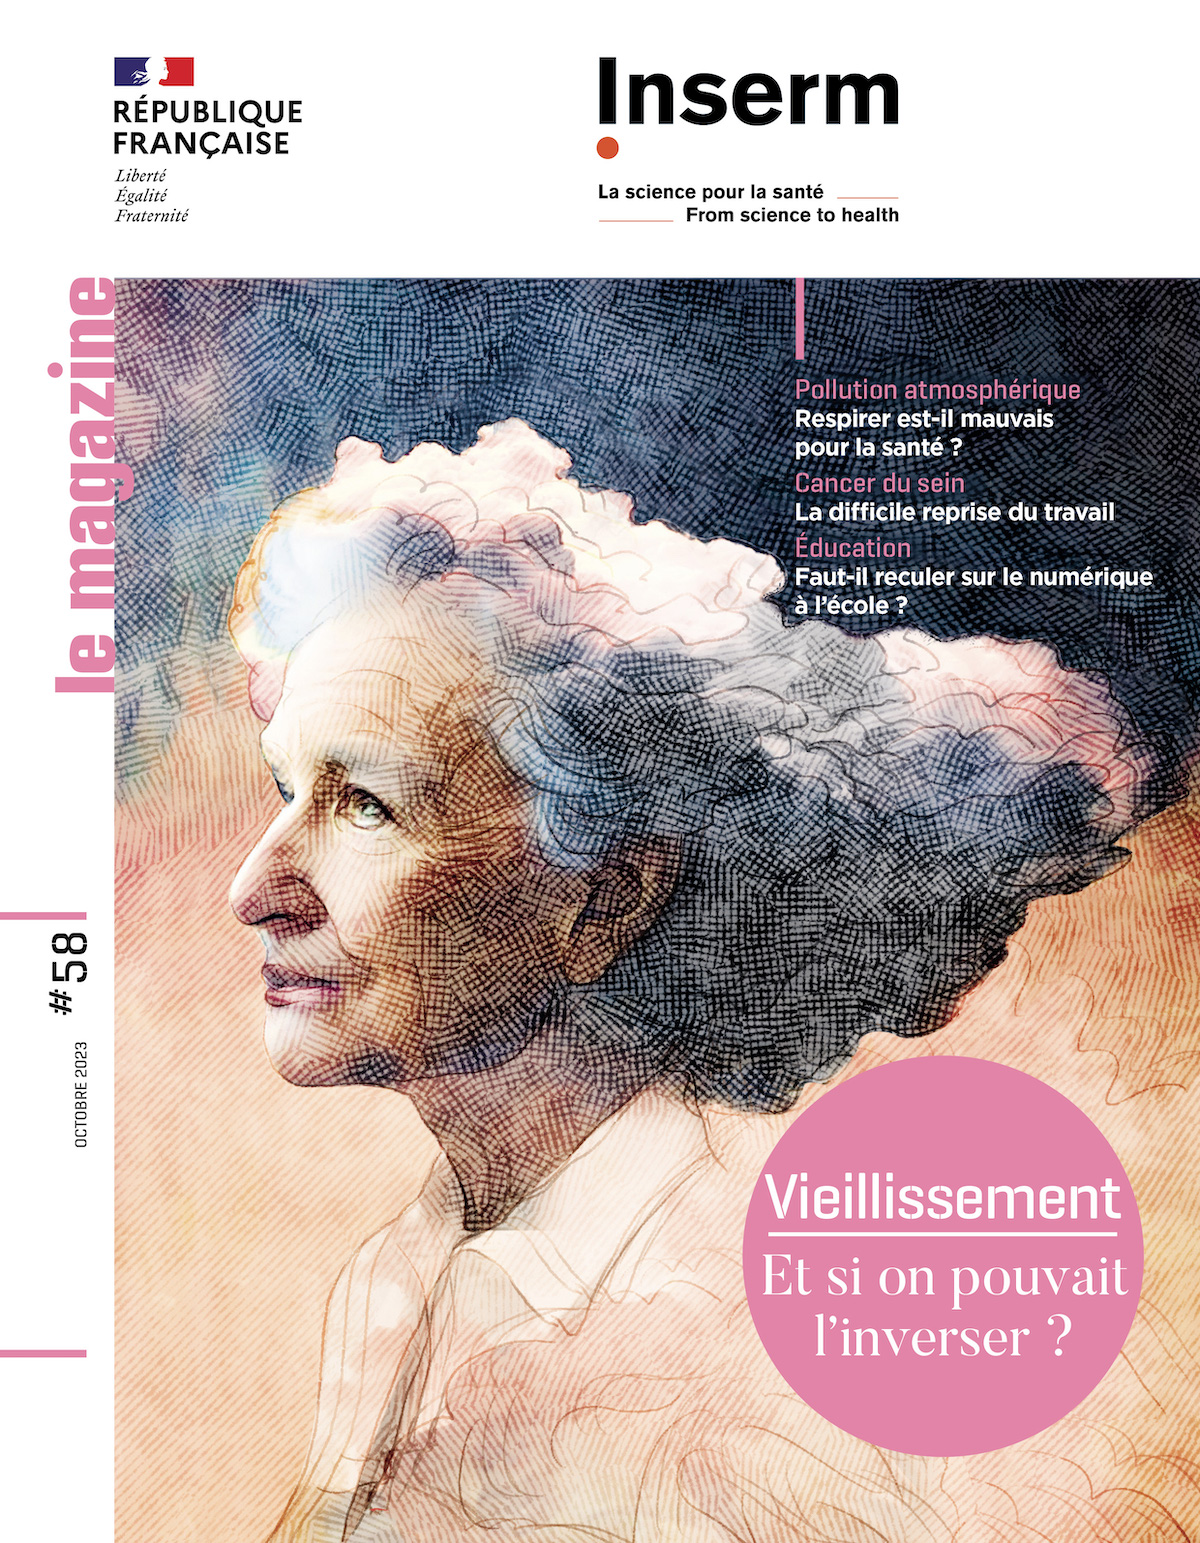 Couverture du magazine de l'Inserm n°58 dont le dossier central est consacré au Vieillissement.